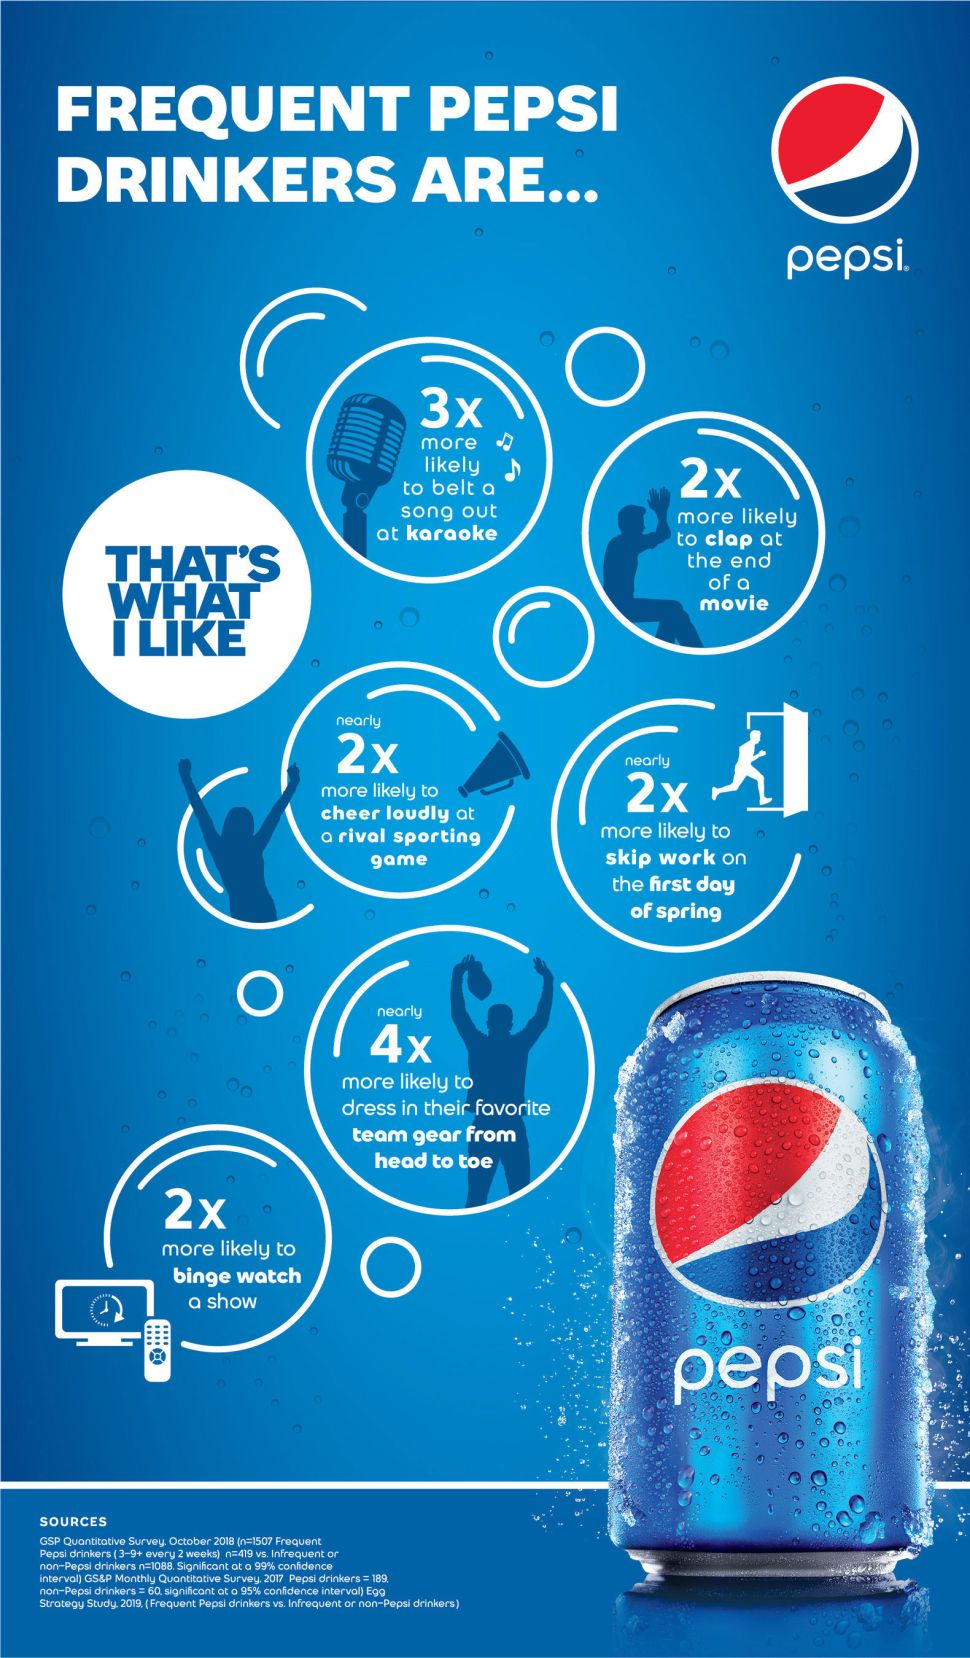 Pepsi เปิดตัว สโลแกนใหม่ “That’s What I Like” ครั้งแรกในรอบ 2 ทศวรรษ